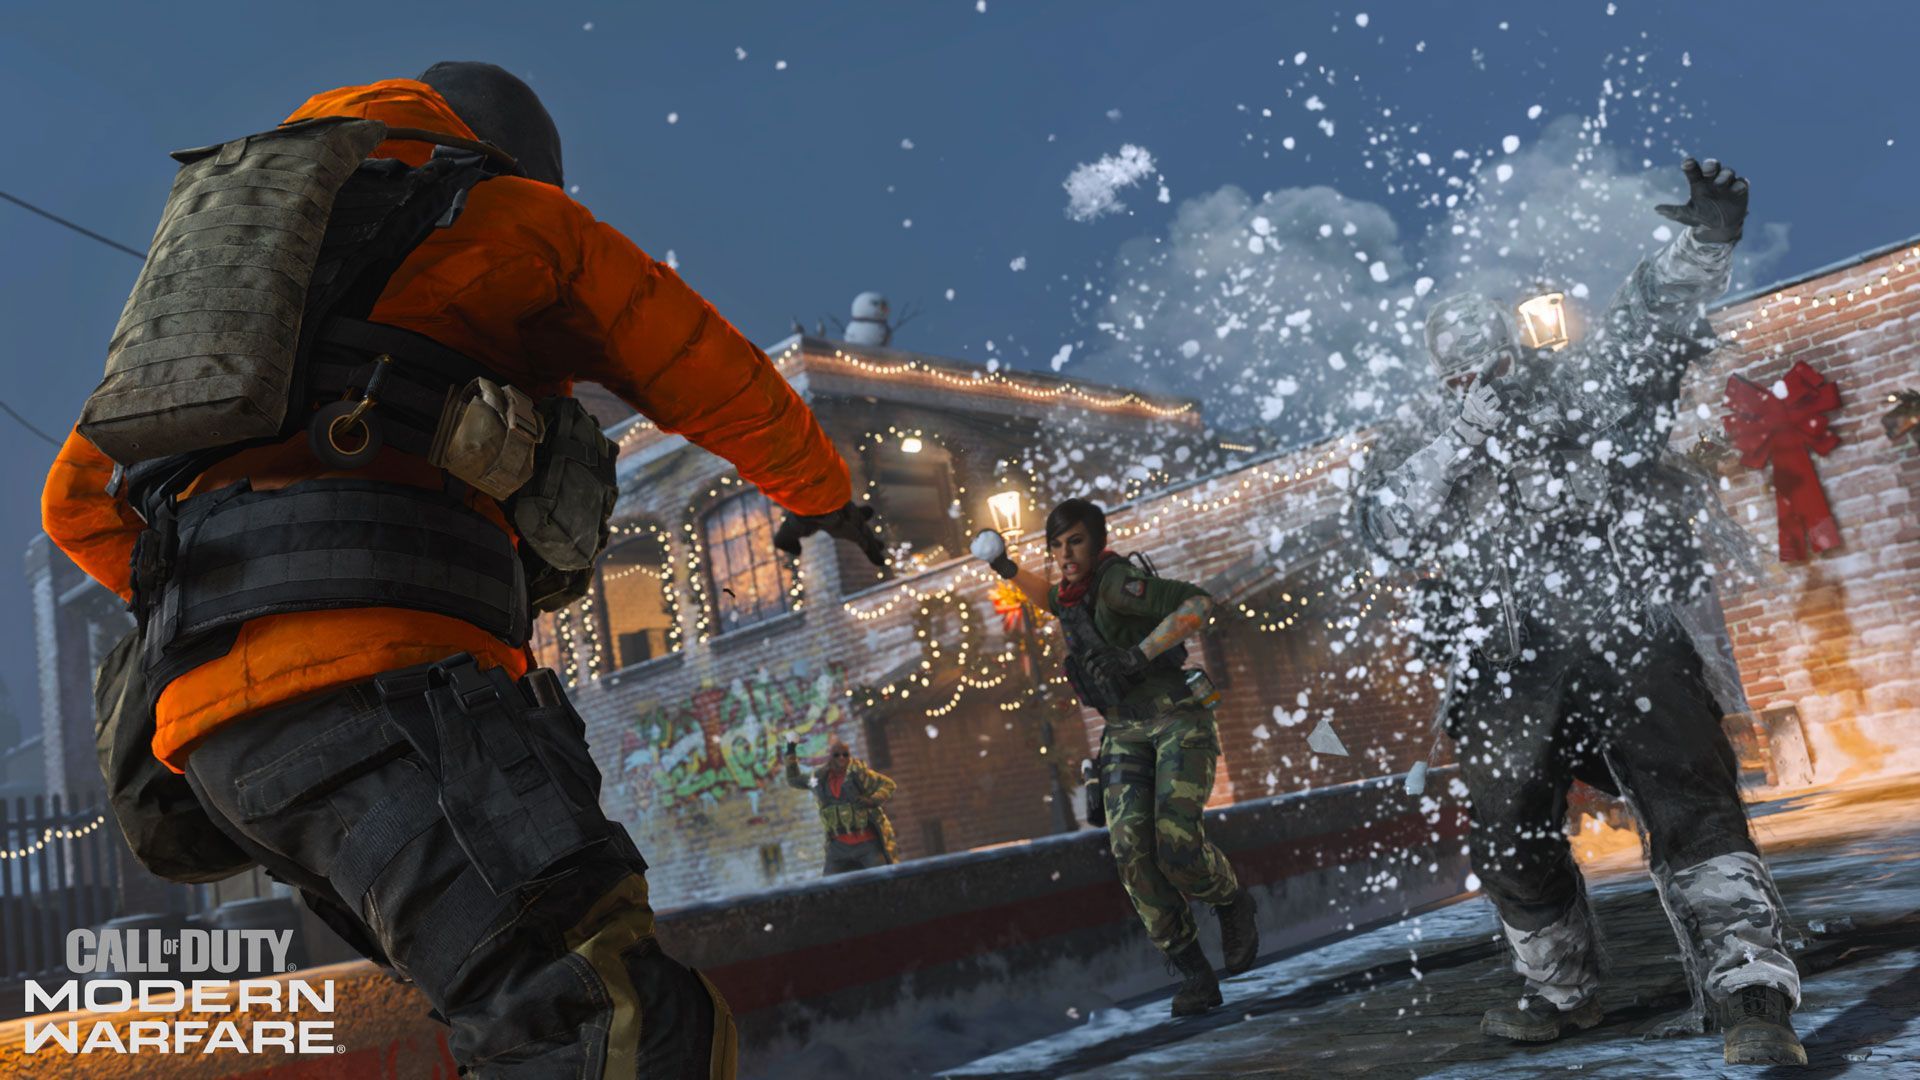 Pour les fêtes, Call of Duty : Modern Warfare propose une bataille de boules de neige